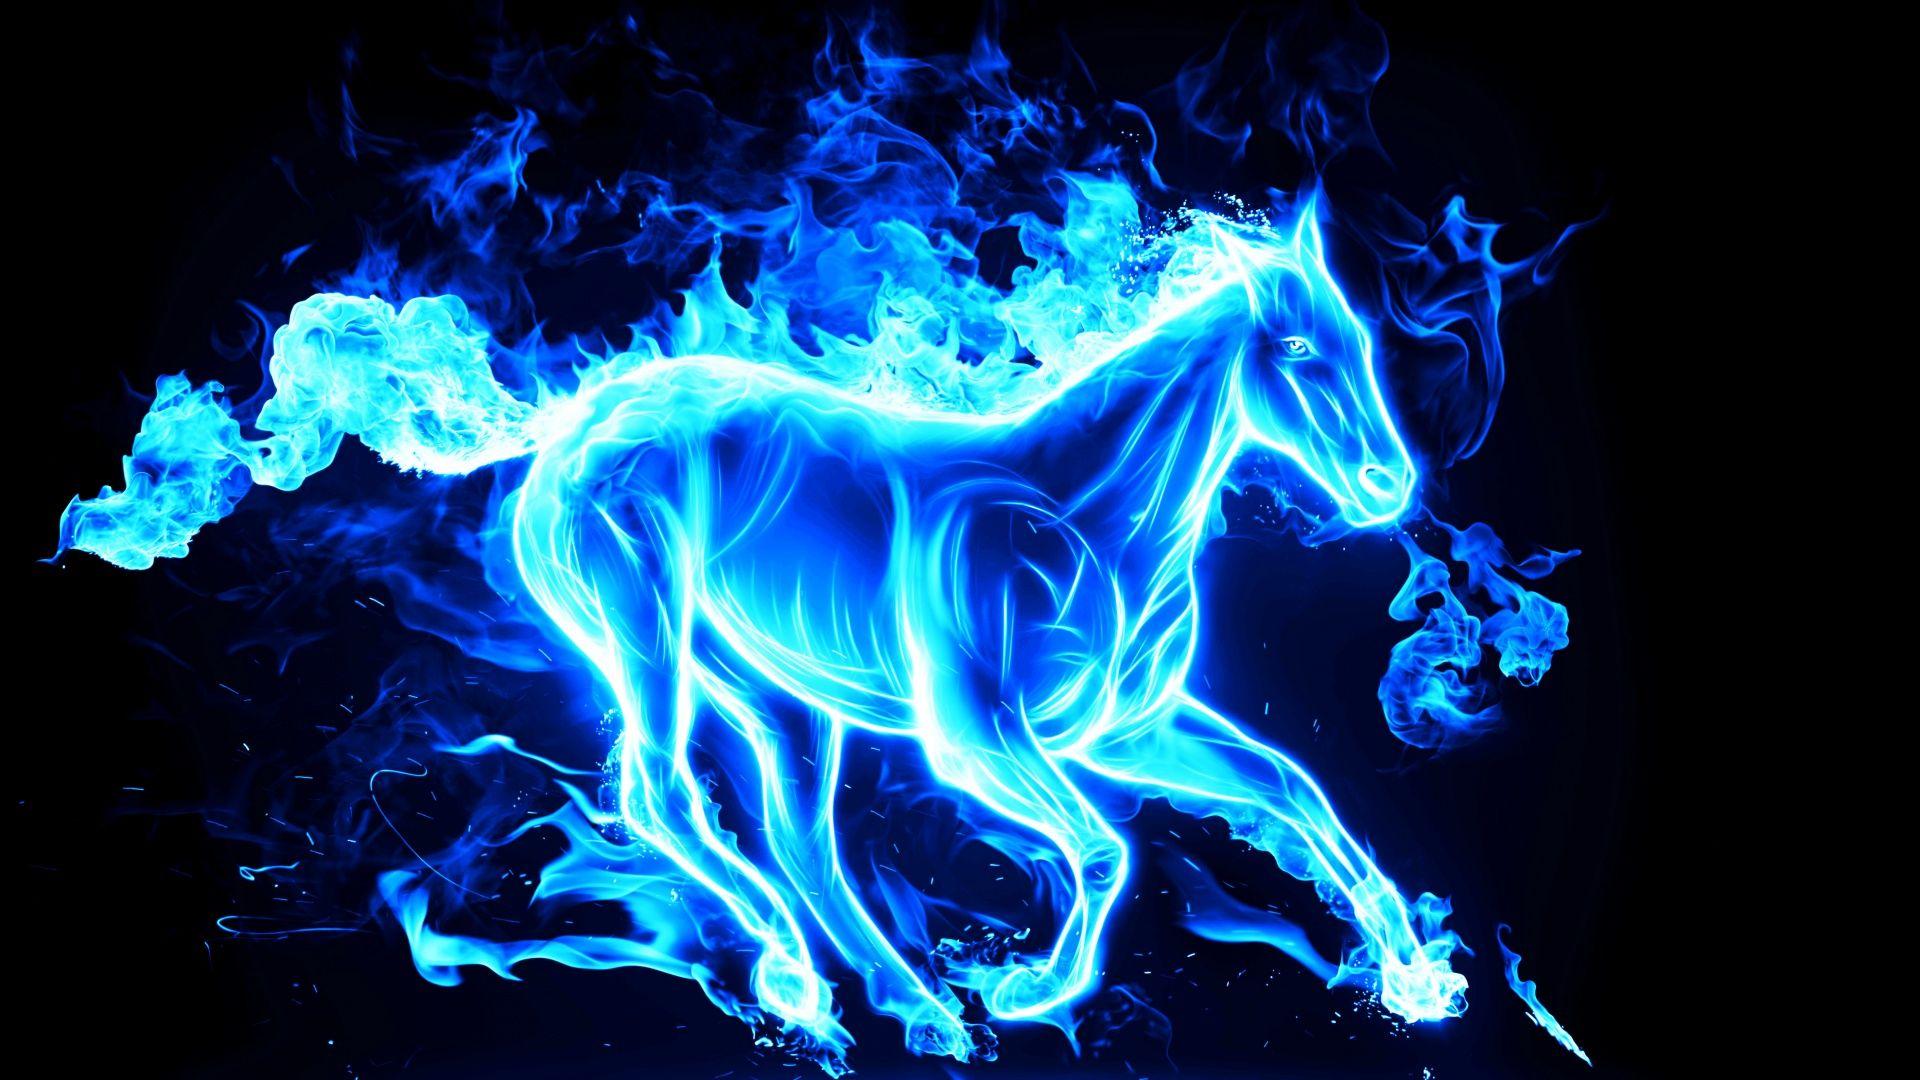 3D Fire Horse Wallpaper Free 3D Fire Horse Background